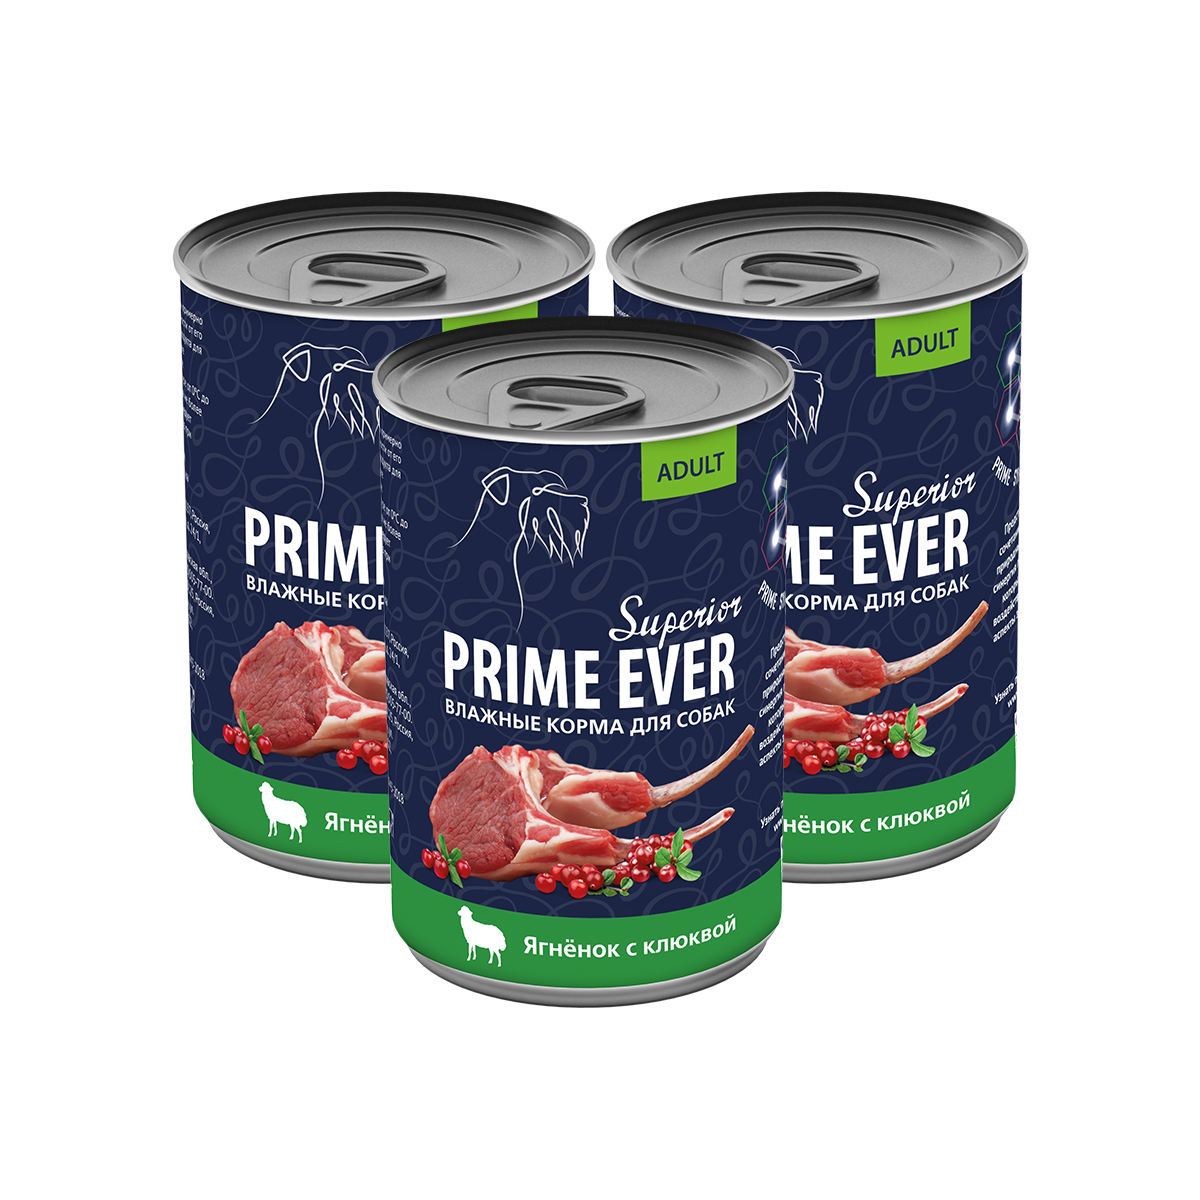 Консервы для собак Prime Ever Superior ягнёнок с клюквой, 3 шт по 400 г